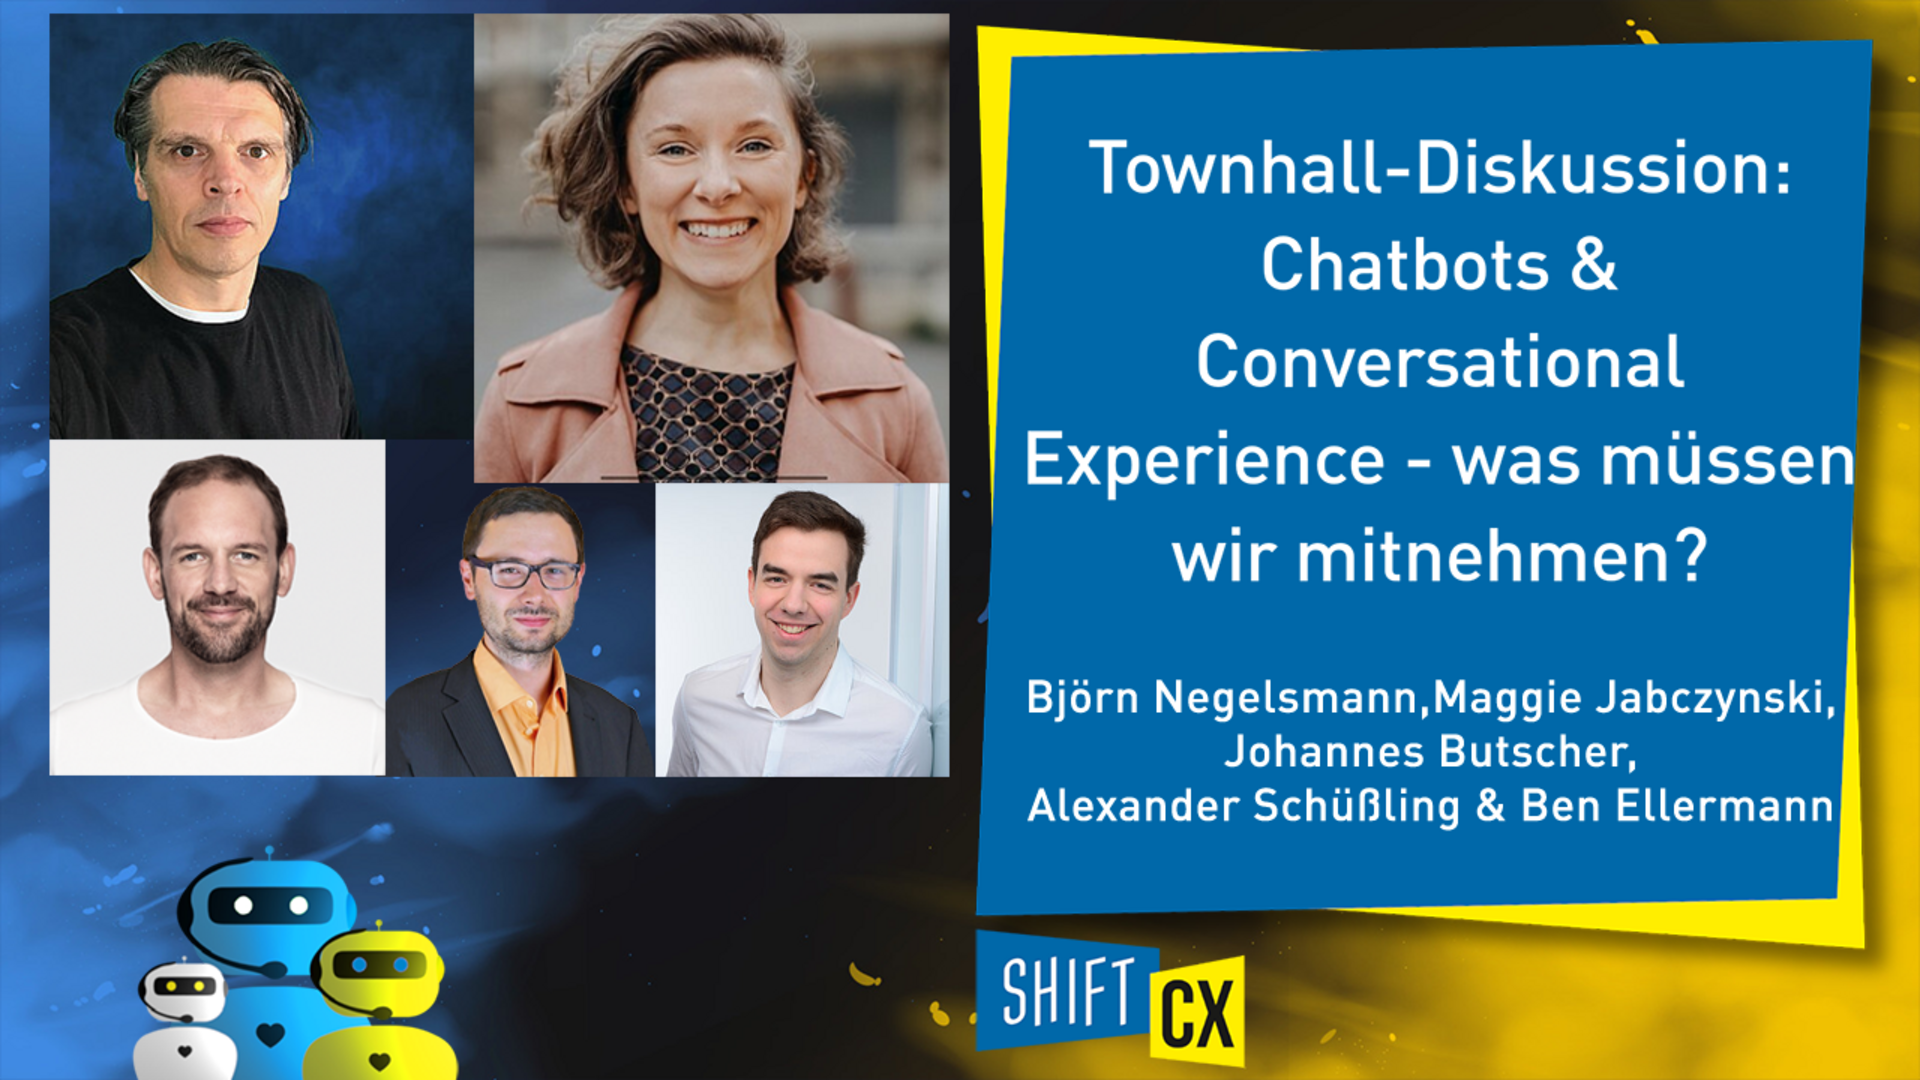 Townhall-Diskussion: Chatbots & Conversational Experience - was müssen wir mitnehmen?